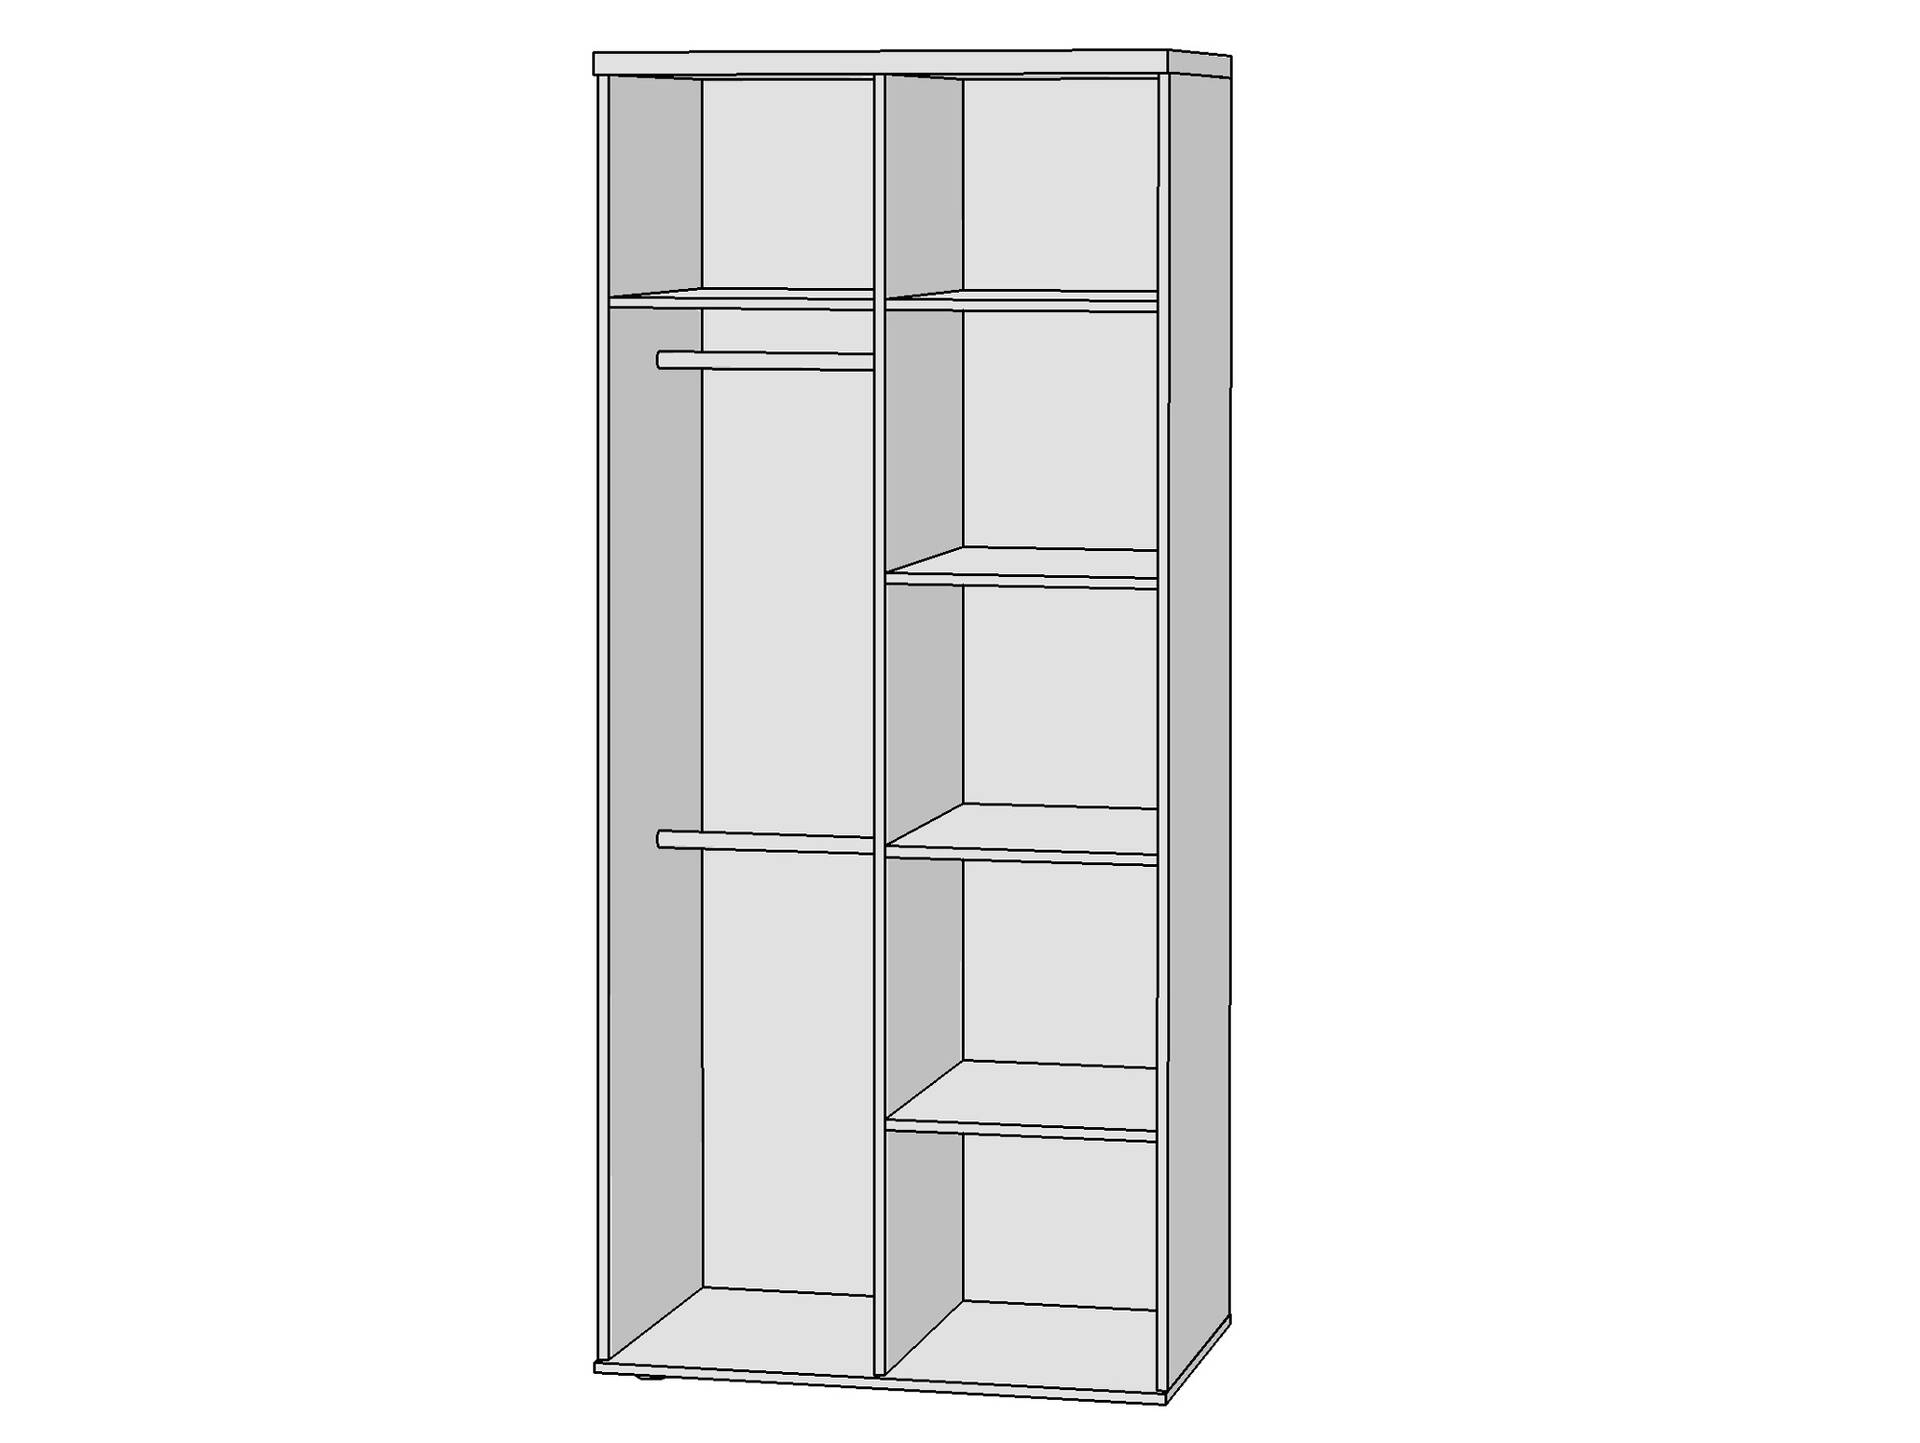 WALDY Kleiderschrank mit 2 Türen, Material Dekorspanplatte, Eiche sonomafarbig/weiss 